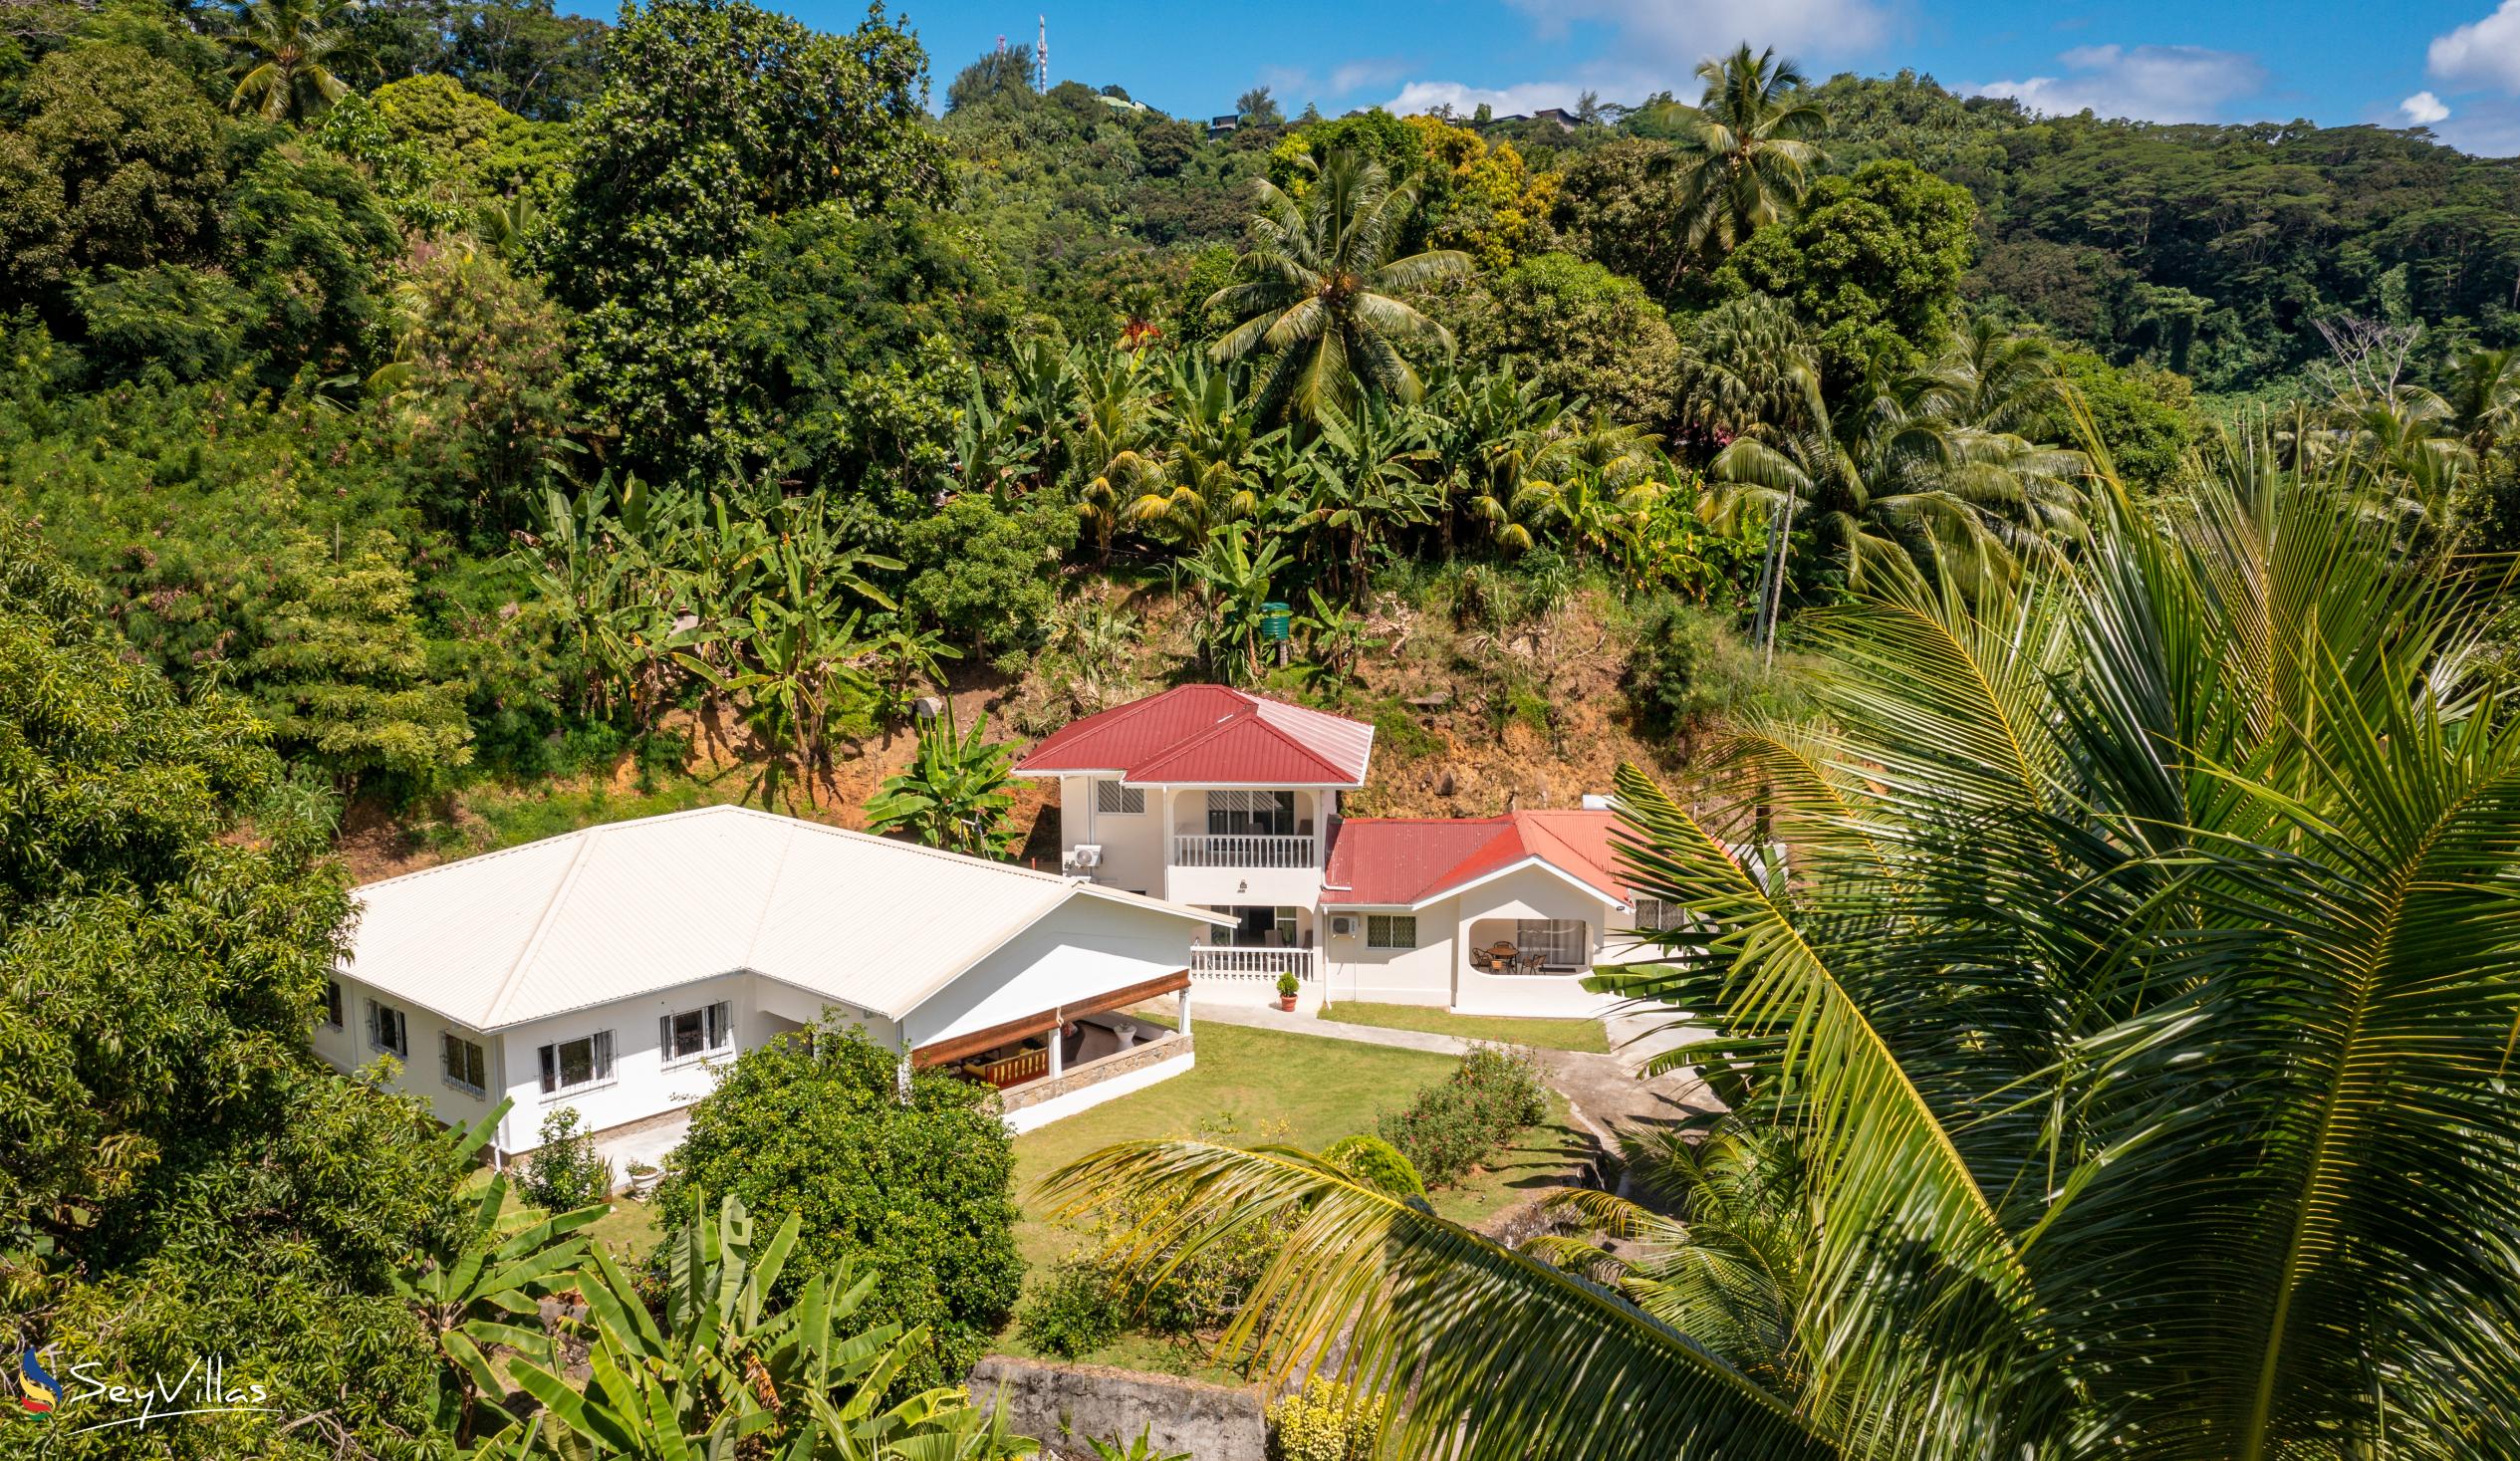 Photo 4: Paul's Residence - Outdoor area - Mahé (Seychelles)